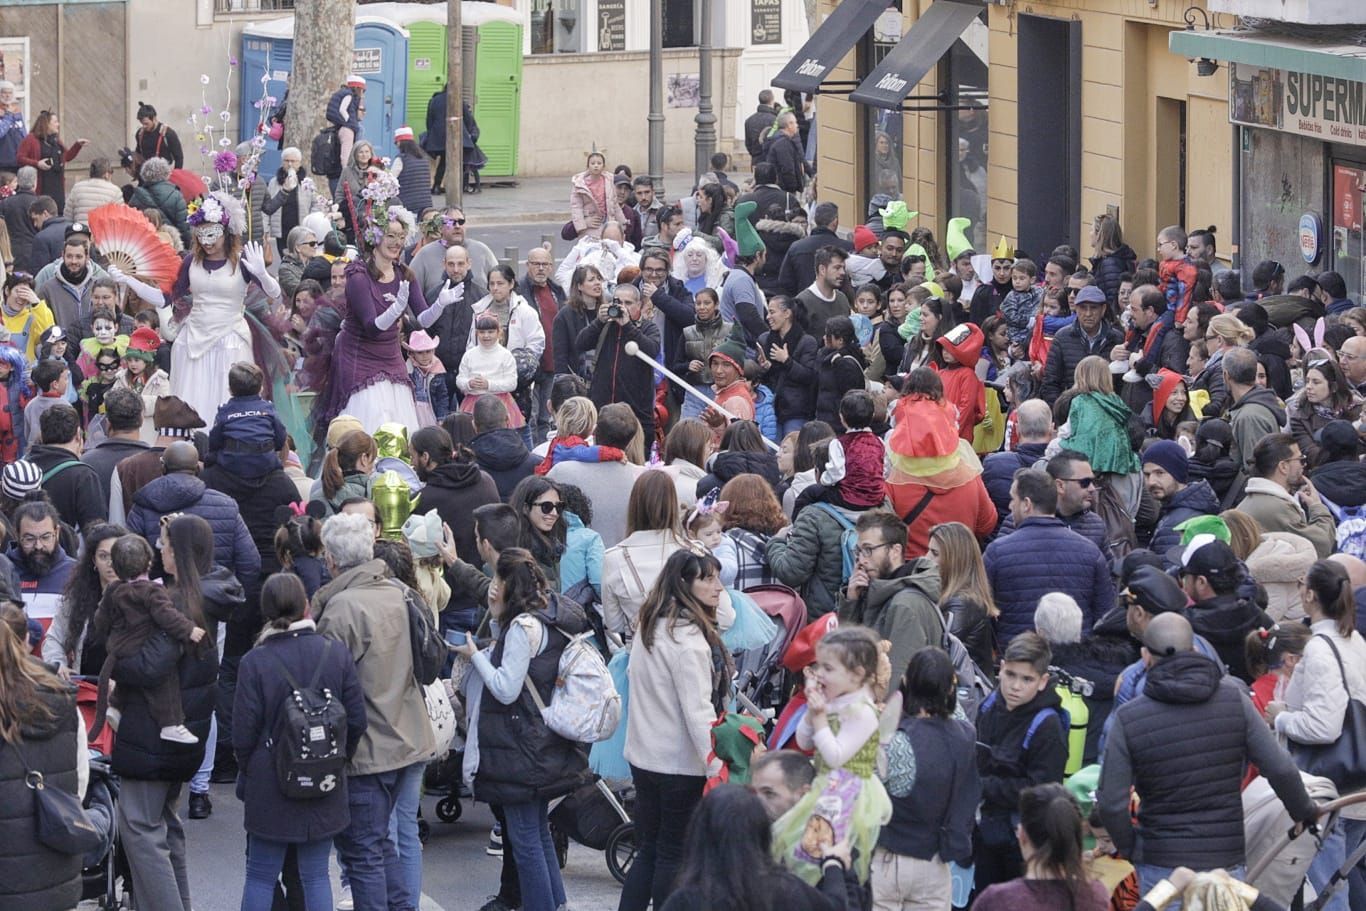 Karneval im Sonnenschein: So war der Kinderumzug Sa Rueta in Palma de Mallorca